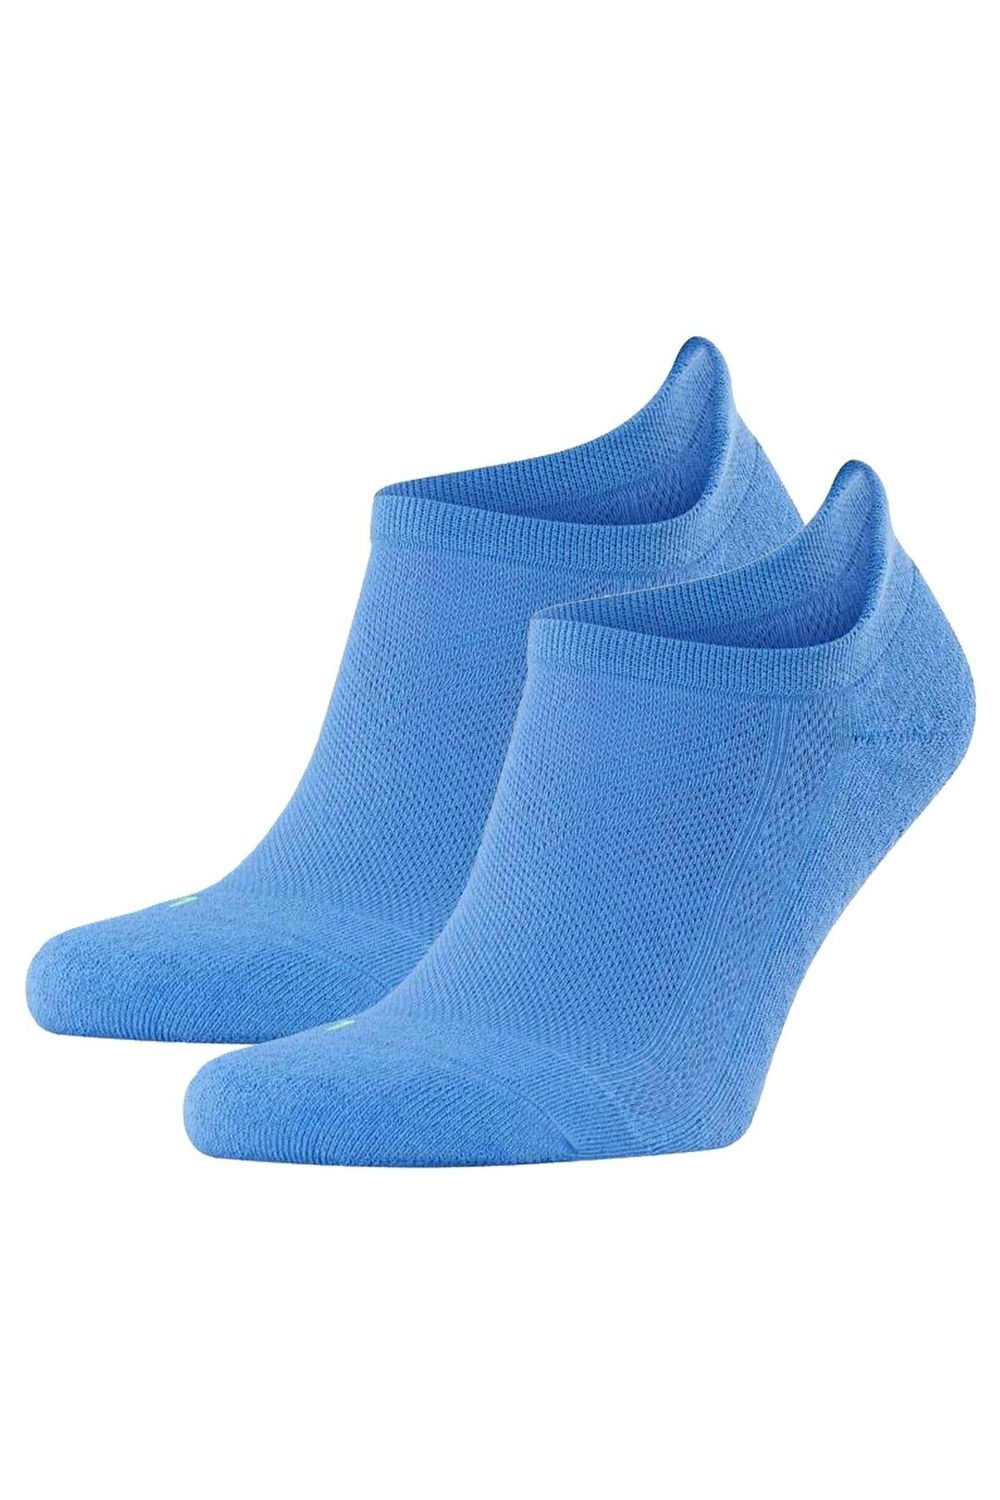 Aufstiegsplan FALKE Unisex Sneakersocken ultraleicht, - 37-48 Uni, Kick, 2er Pack Trendyol - Cool anatomisch, Socken